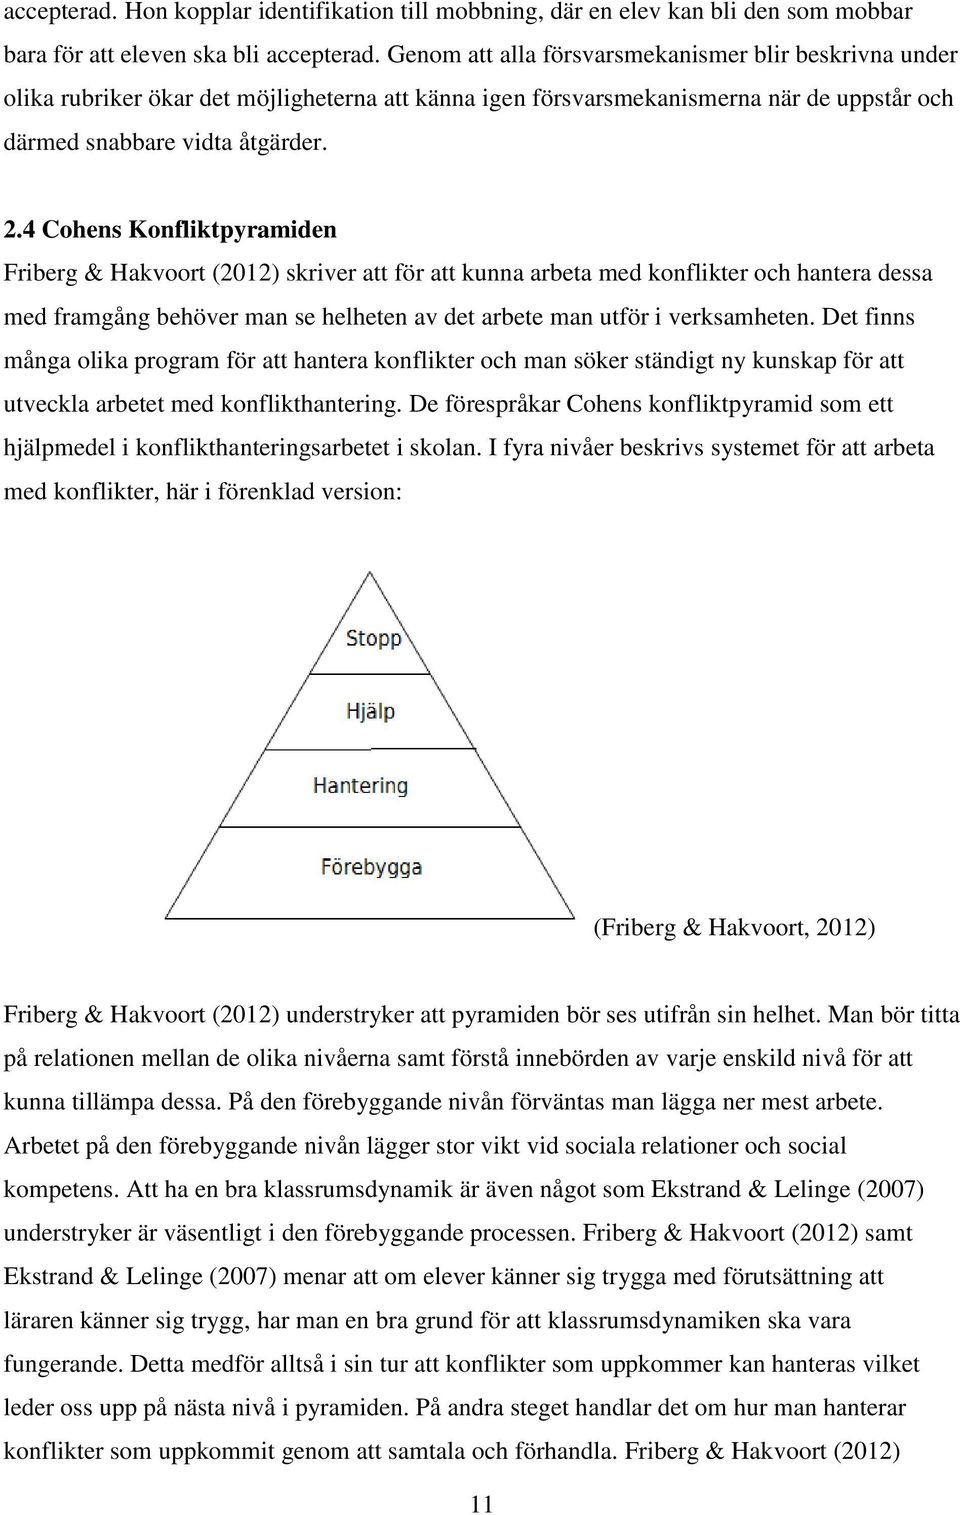 4 Cohens Konfliktpyramiden Friberg & Hakvoort (2012) skriver att för att kunna arbeta med konflikter och hantera dessa med framgång behöver man se helheten av det arbete man utför i verksamheten.